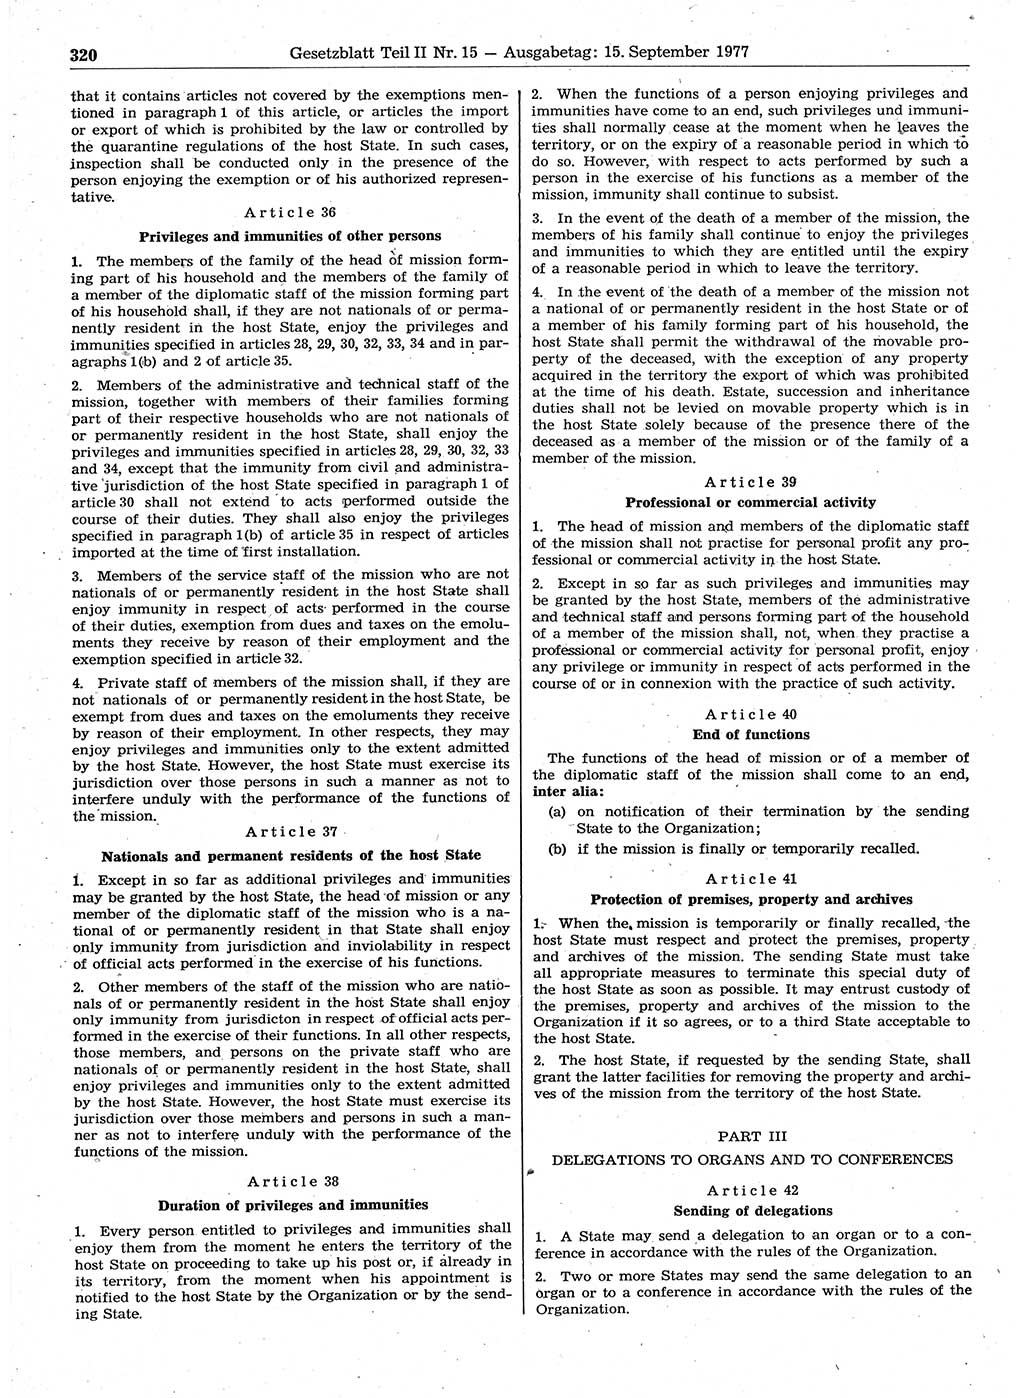 Gesetzblatt (GBl.) der Deutschen Demokratischen Republik (DDR) Teil ⅠⅠ 1977, Seite 320 (GBl. DDR ⅠⅠ 1977, S. 320)